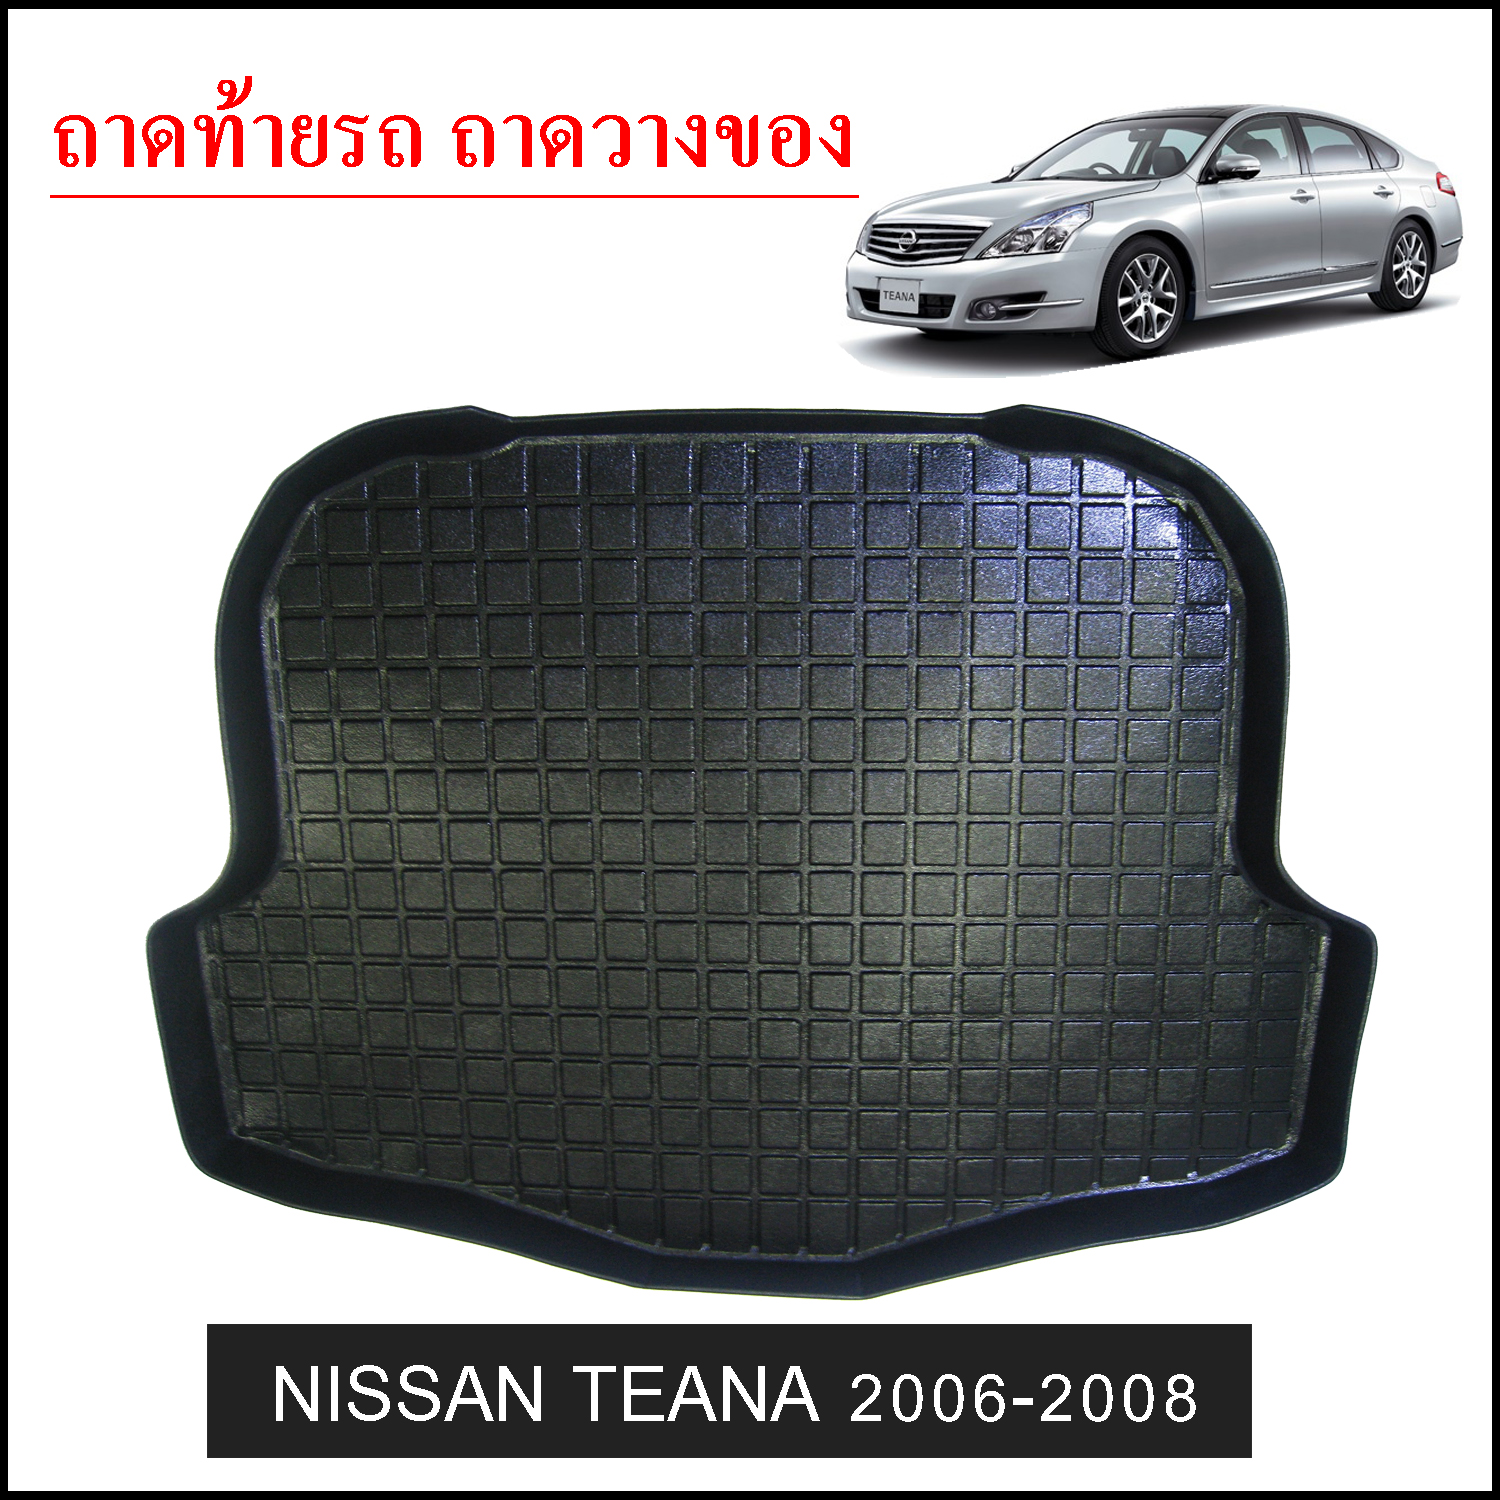 Nissan Teana 2006-2008